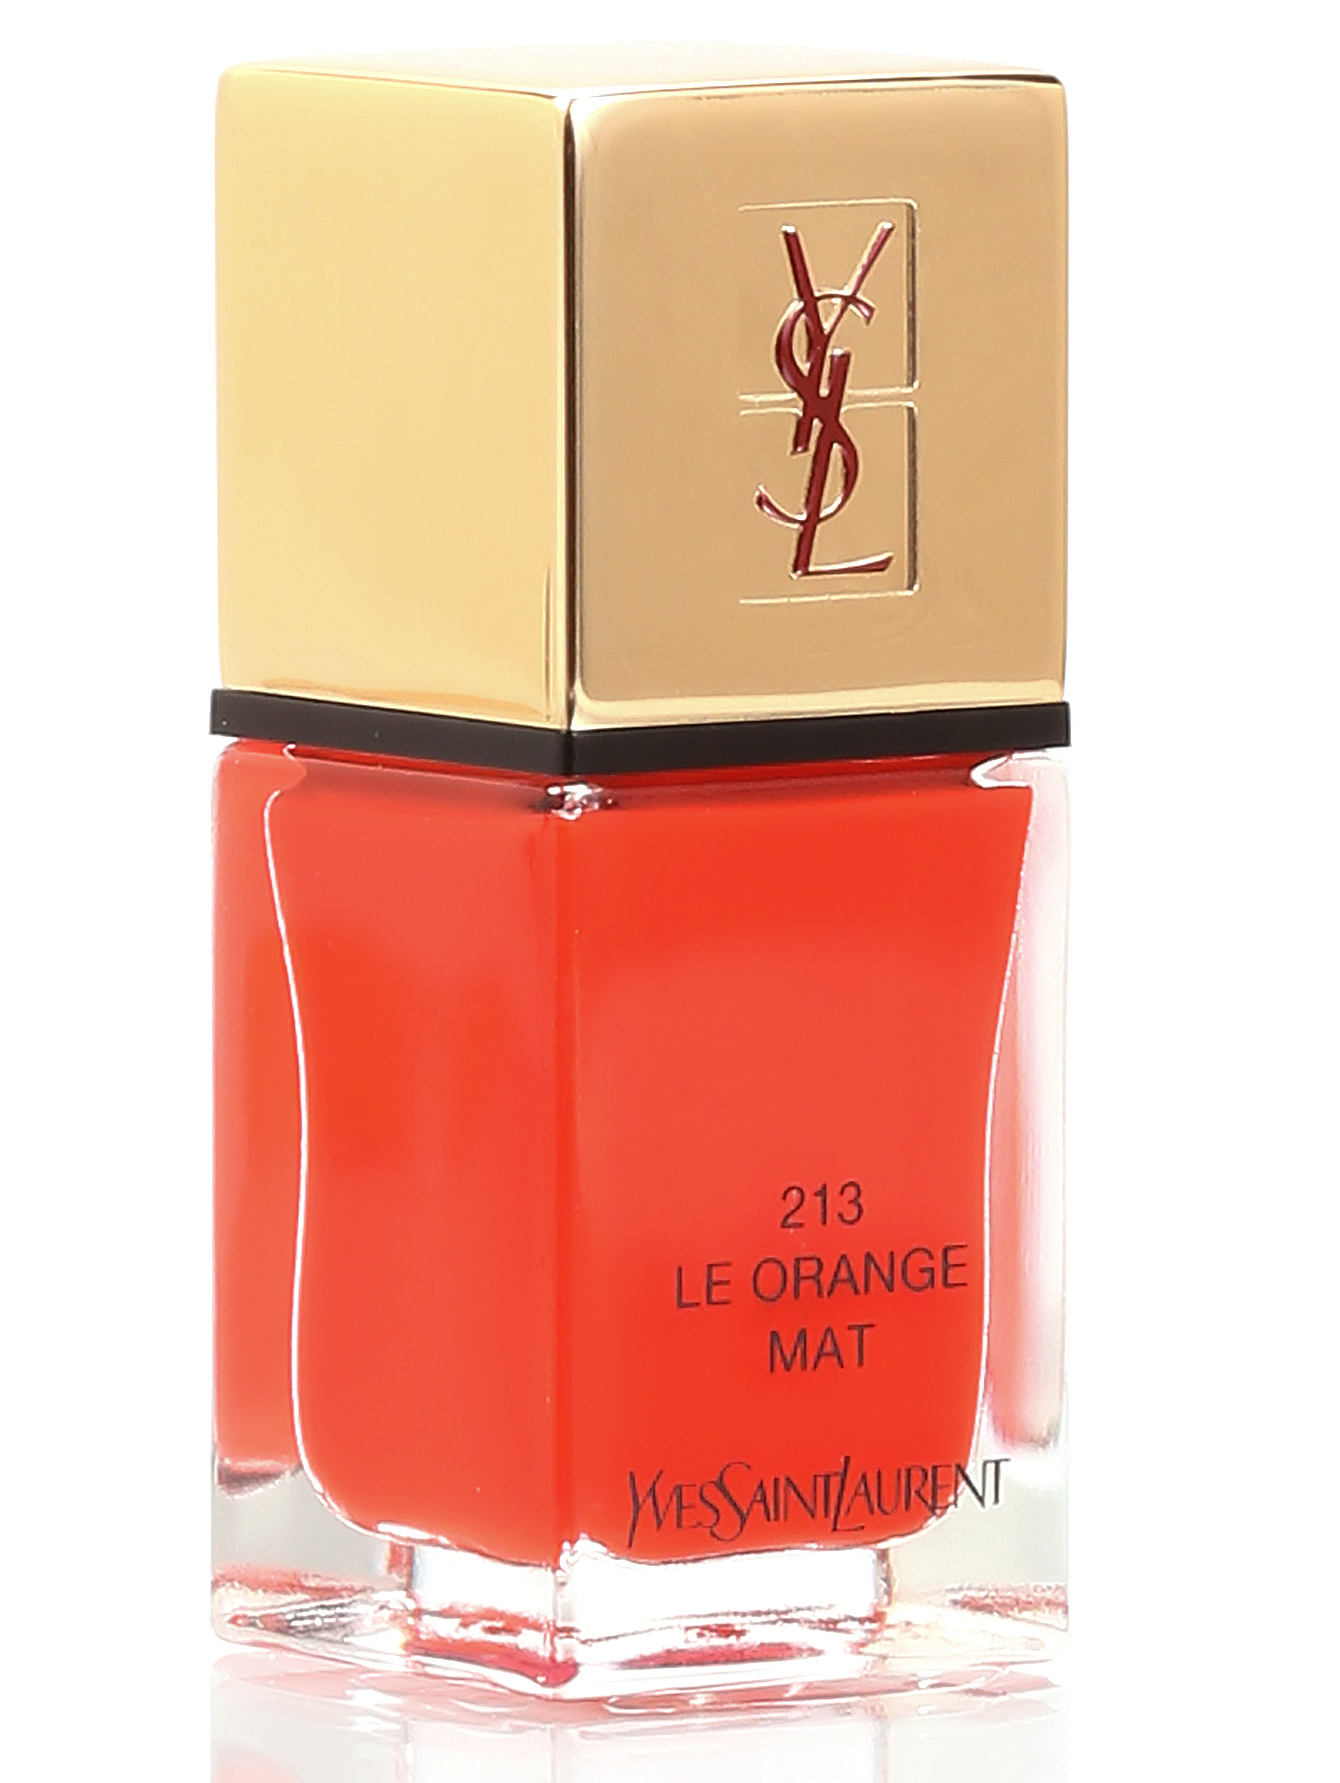 Лак для ногтей - №213 Le orange mat, La Laque Couture, 10ml - Общий вид